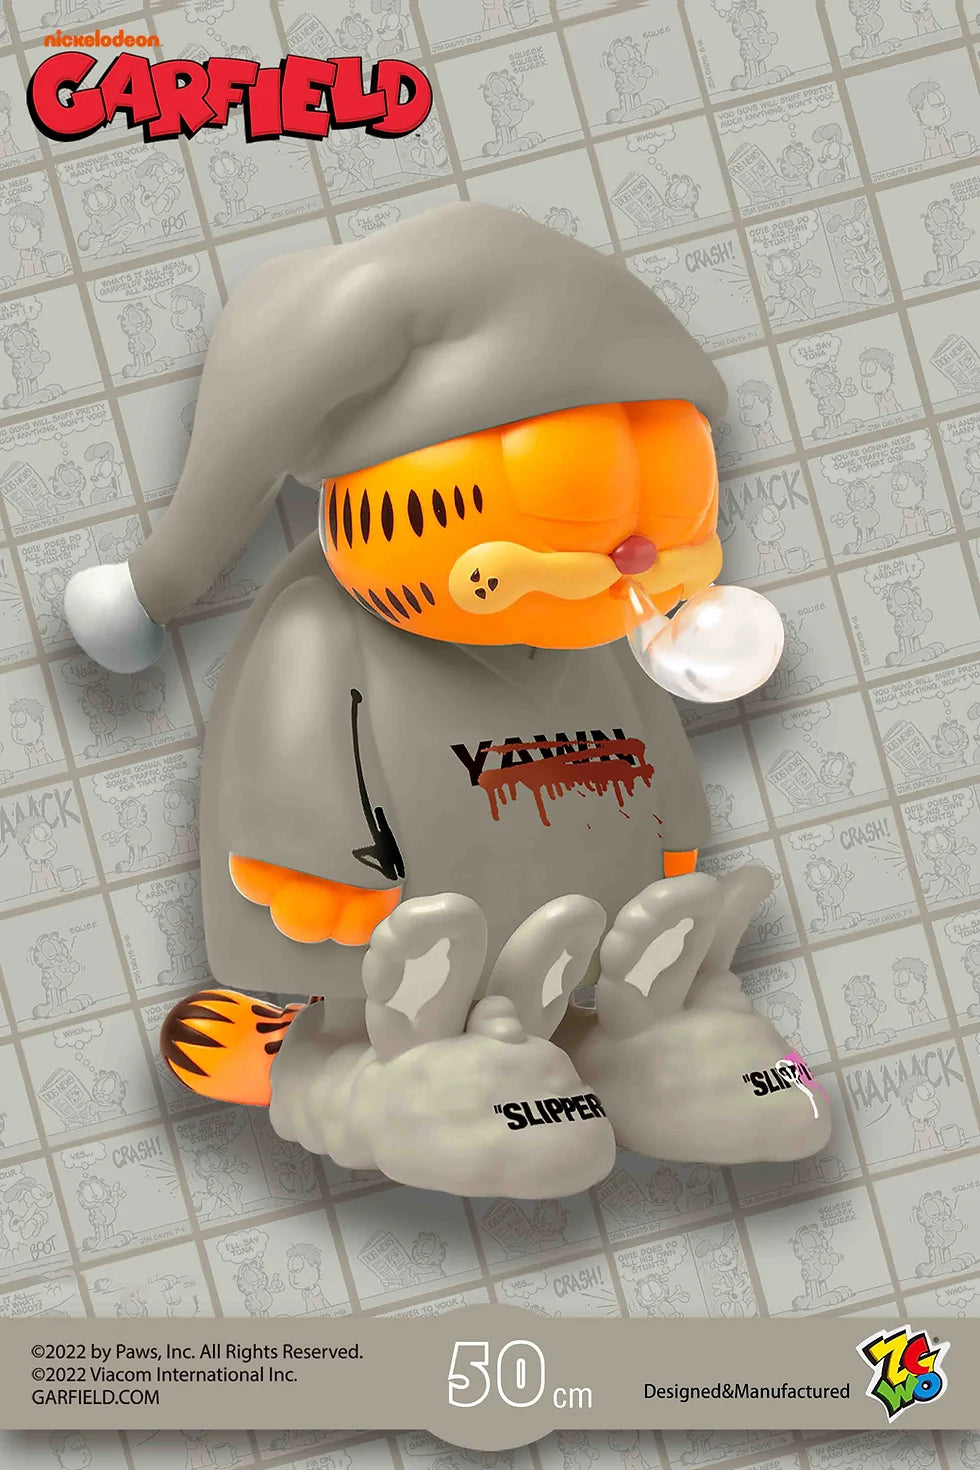 Garfield - "I am not Sleeping" 26cm Yawn